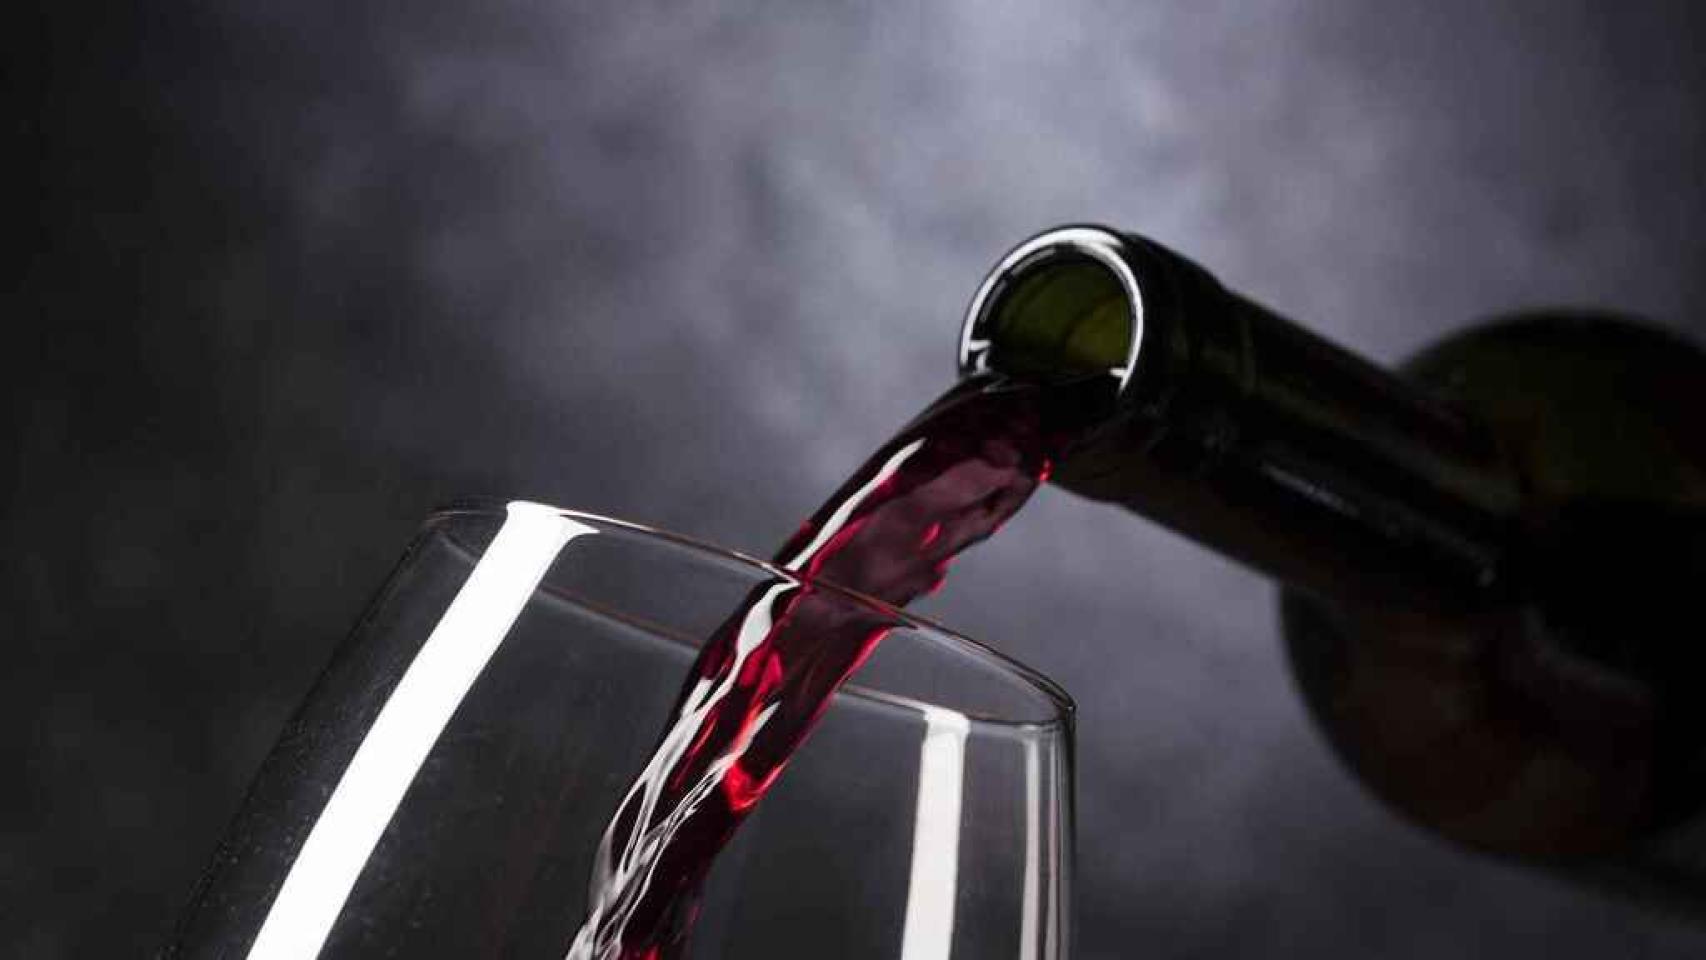 Abolladura bandeja Benigno Estos son los 14 mejores vinos calidad-precio de Mercadona, Lidl,  Carrefour, Alcampo...